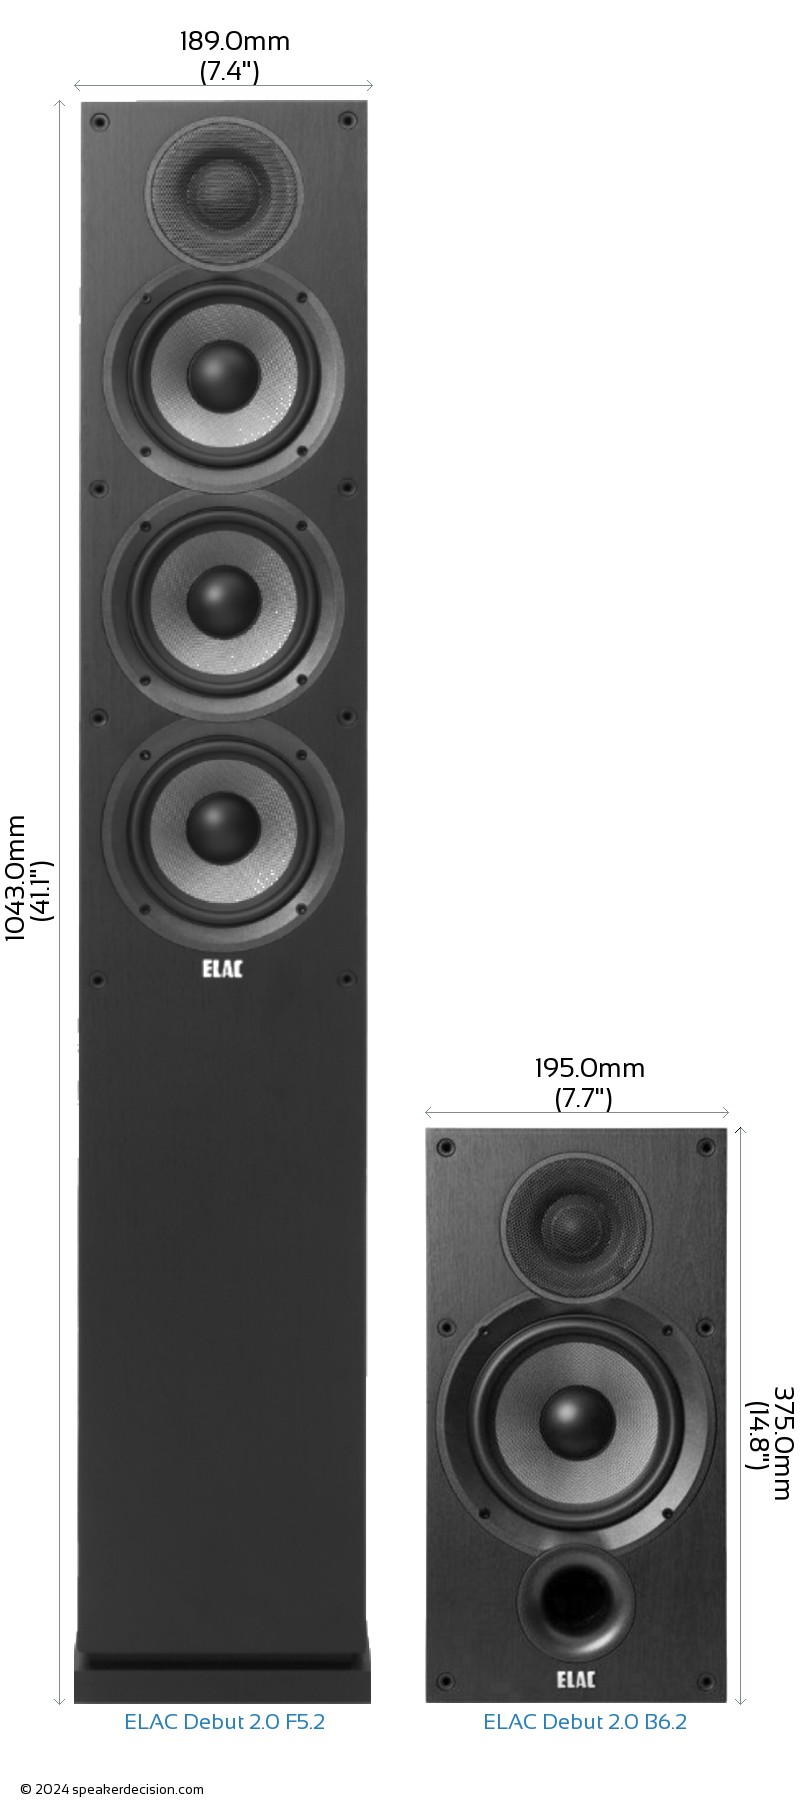 ELAC Debut 2.0 F5.2 vs ELAC Debut 2.0 B6.2 Size Comparison - Front View